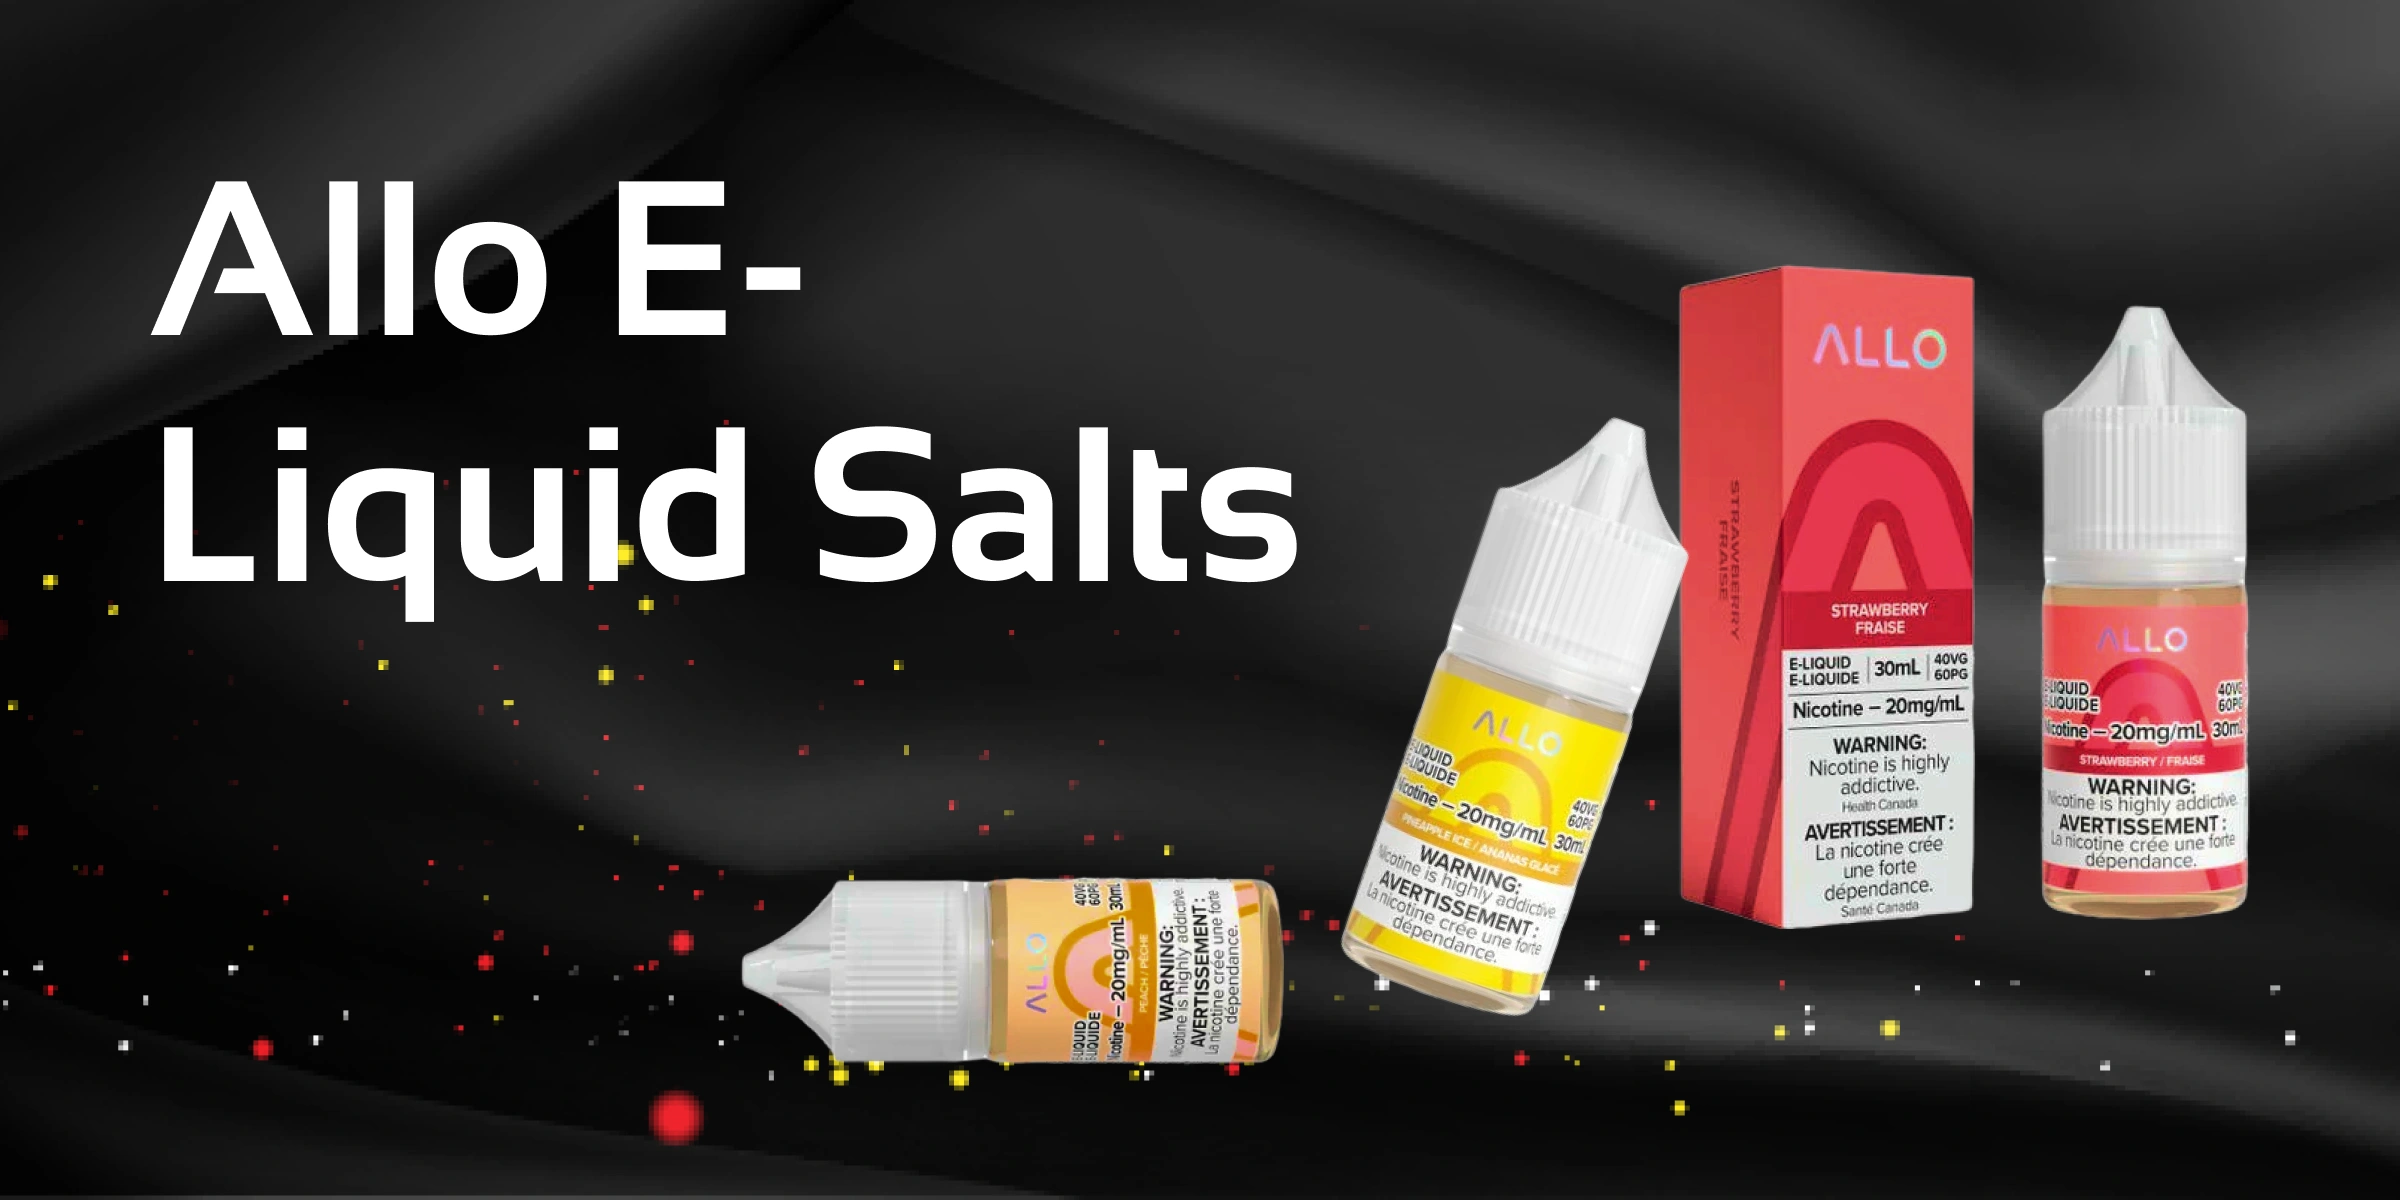 Allo E-Liquid Salts